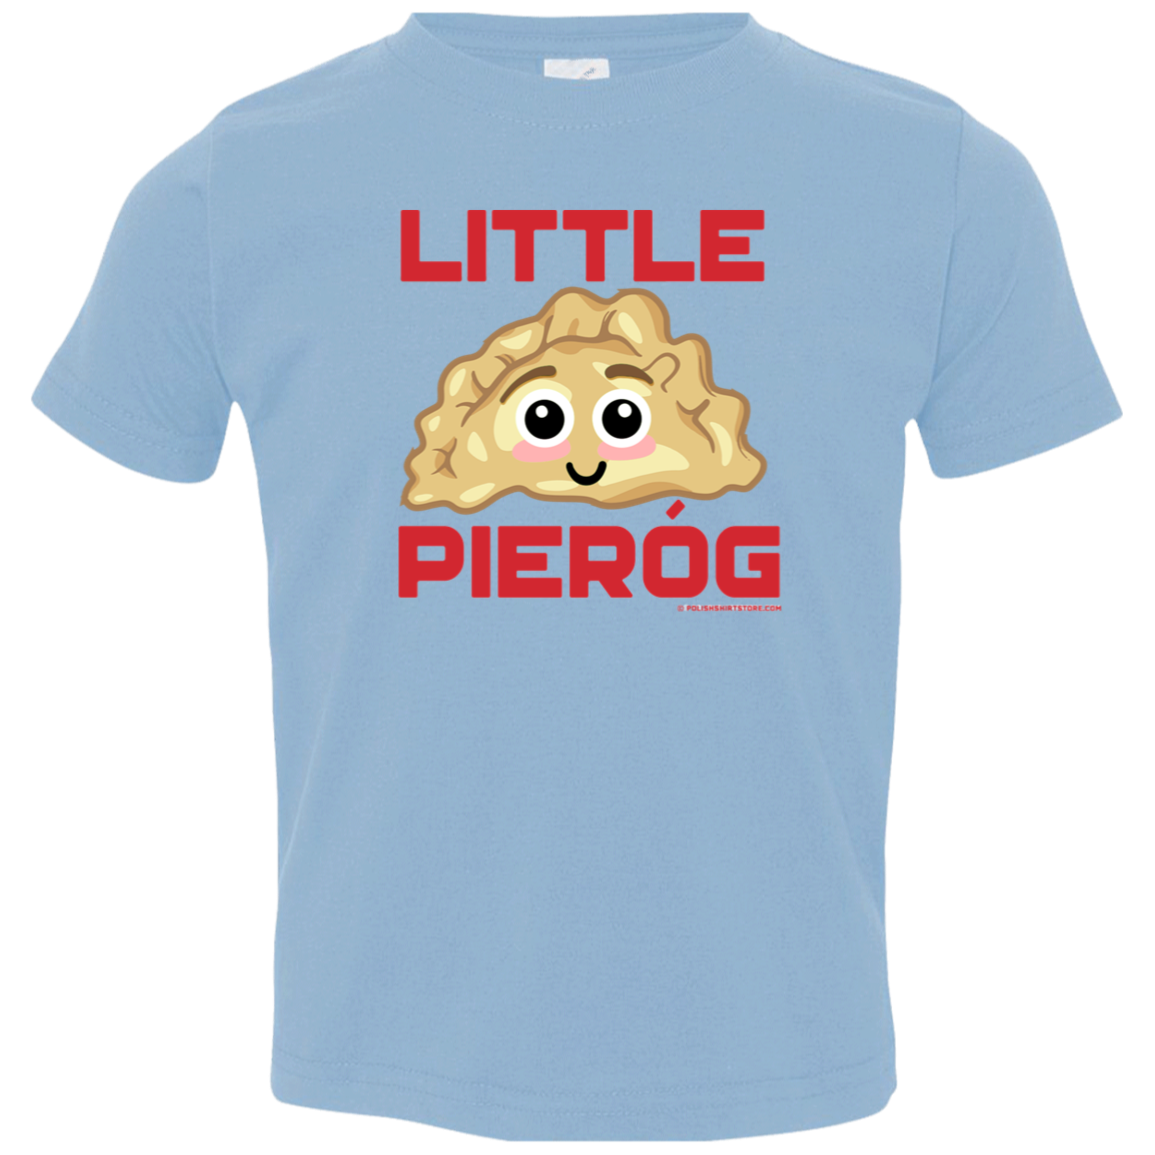 Little Pierog Infant & Toddler T-Shirt Apparel CustomCat Toddler T-Shirt Light Blue 2T